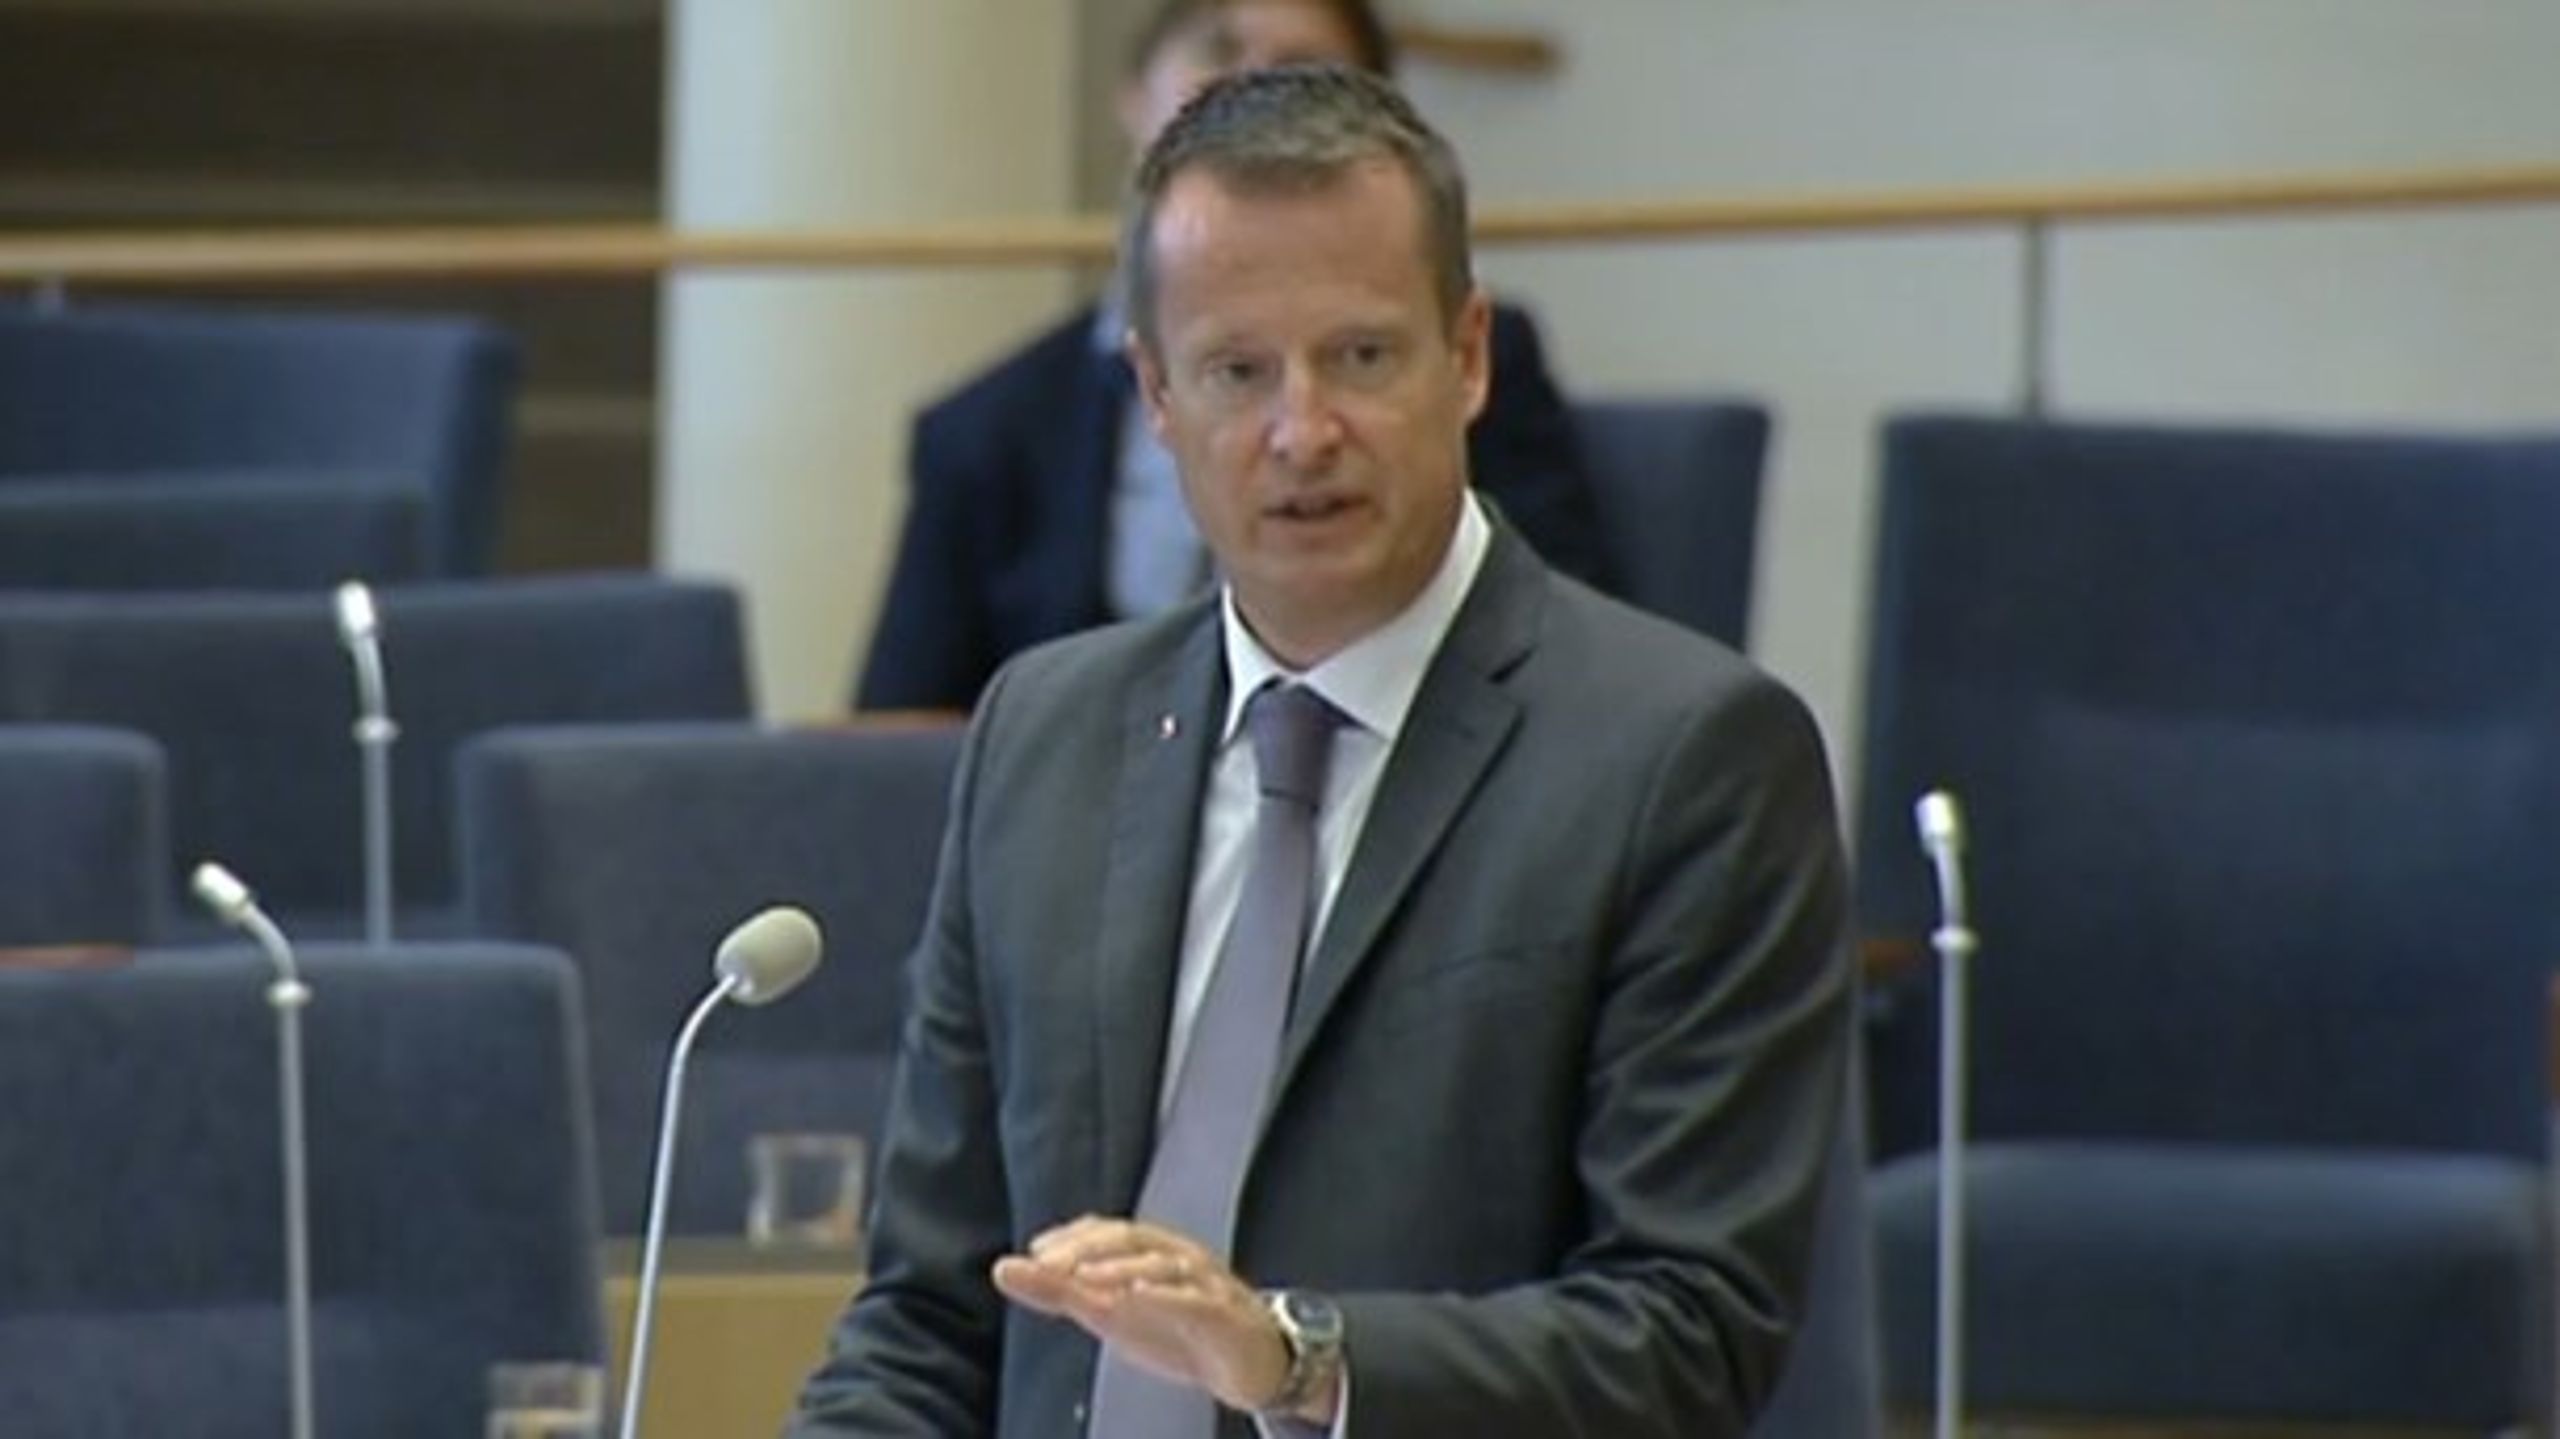 Inrikesminister Anders Ygeman (S)&nbsp;vill att Sverige ansluter sig &nbsp;fullt ut till två EU-samarbeten kring polisen.